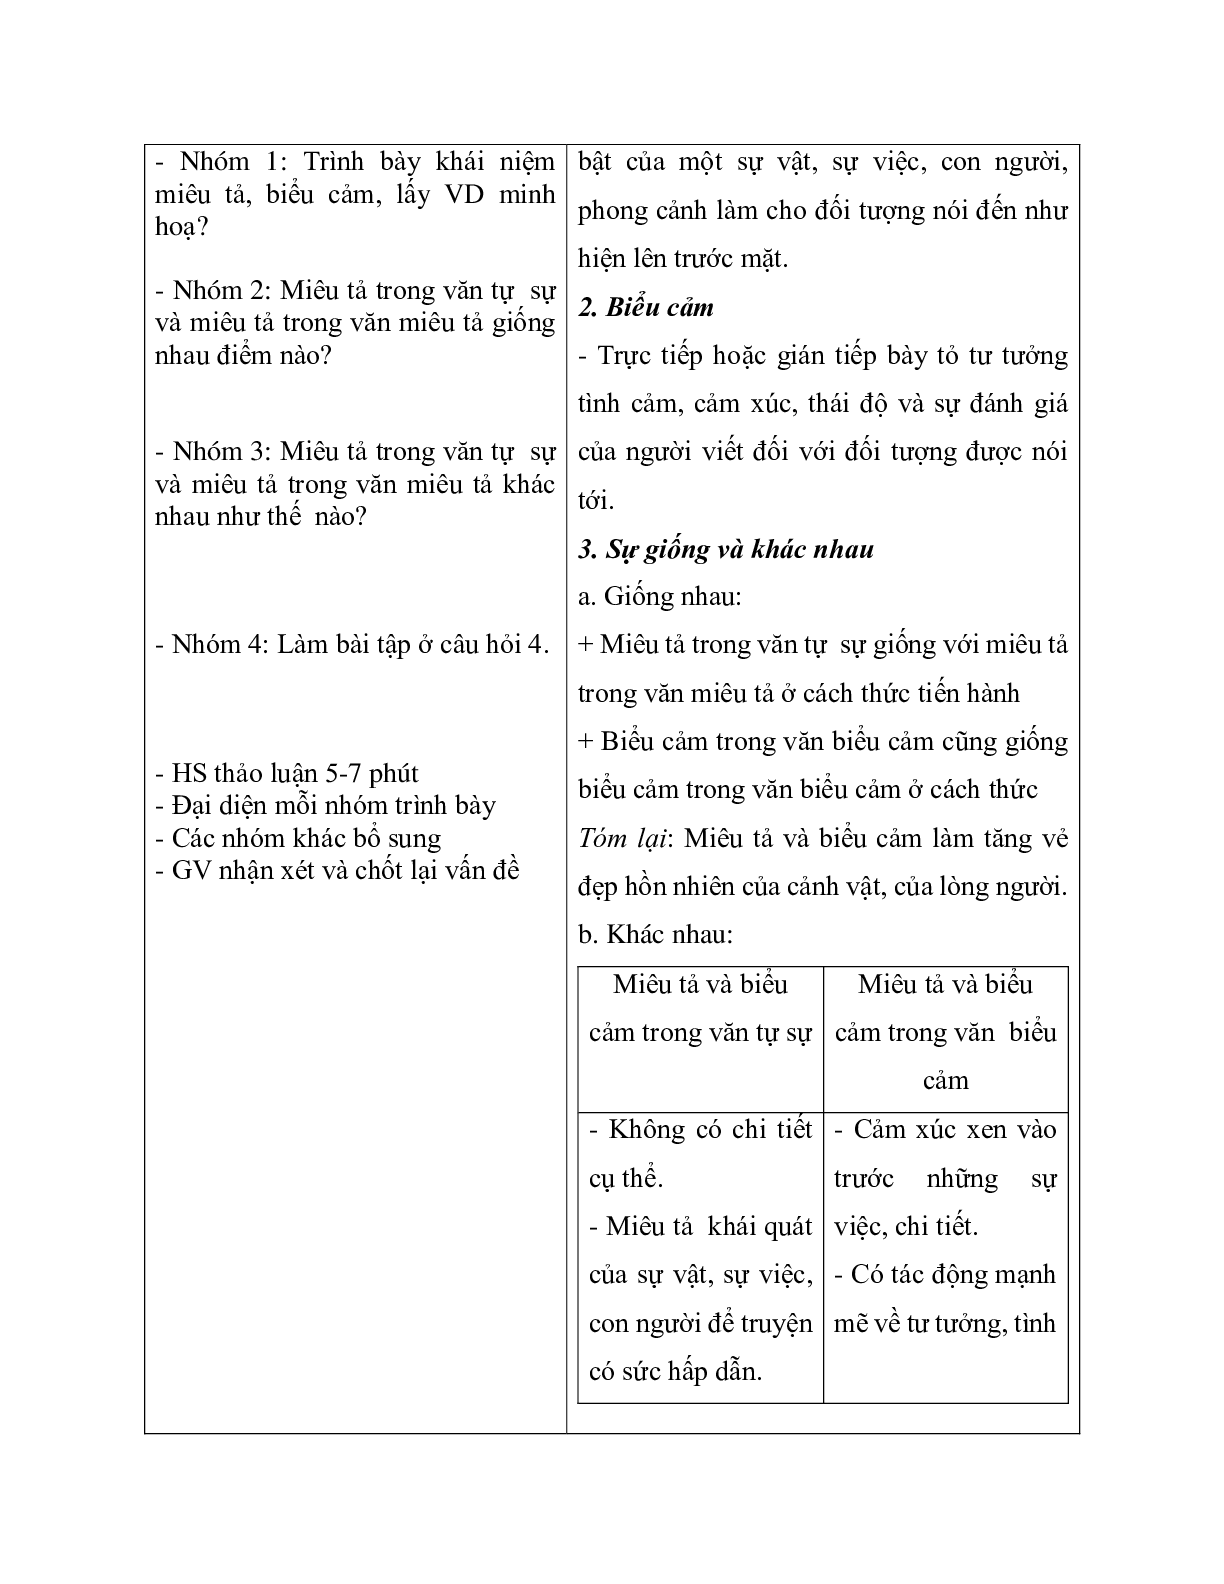 Giáo án ngữ văn lớp 10 Tiết 20: Miêu tả và biểu cản trong bài văn tự sự (trang 3)